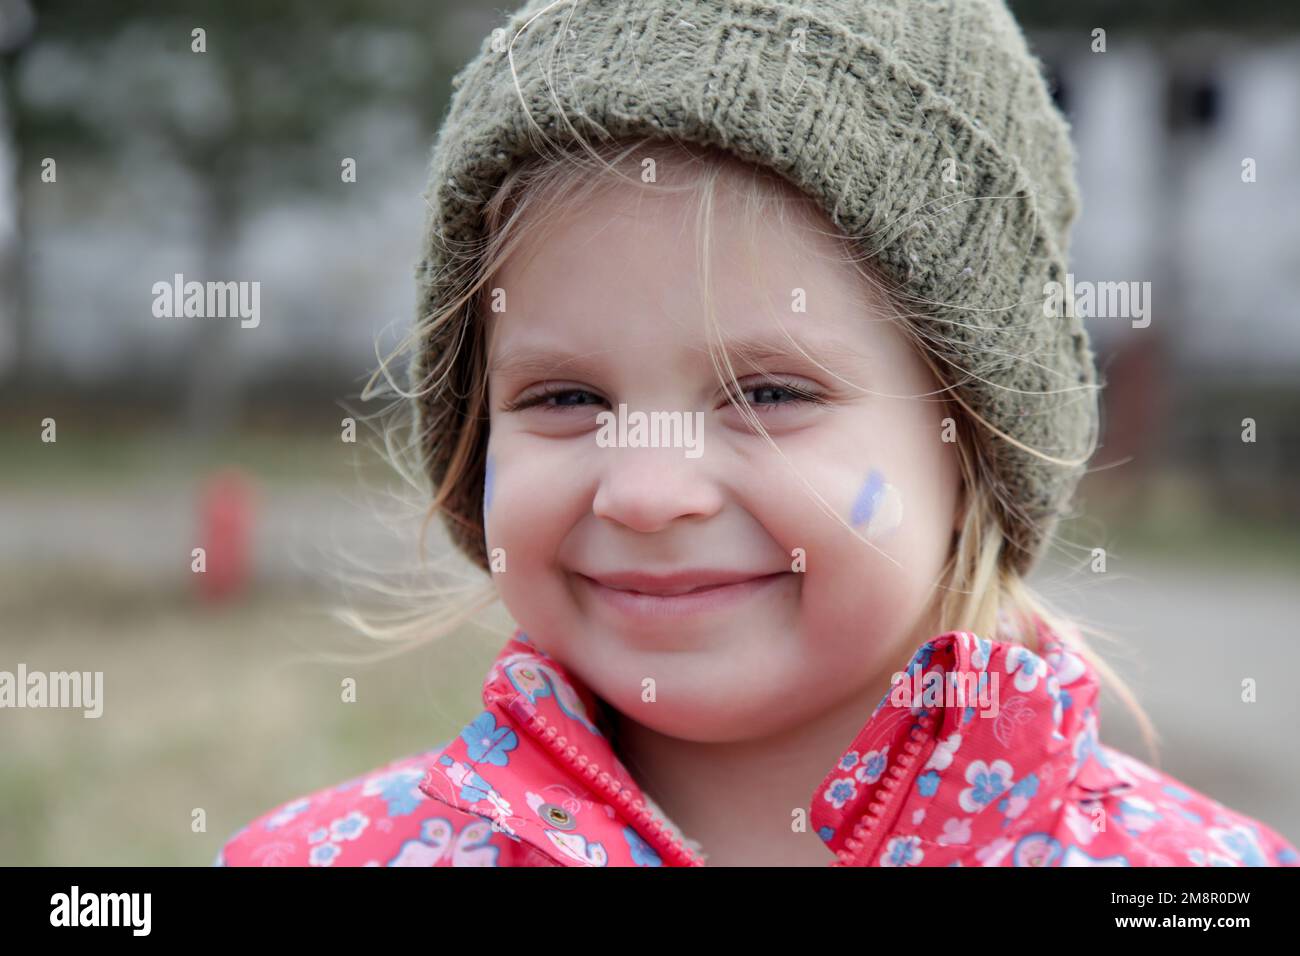 Retrato de niña en edificio arruinado con la bandera de Ucrania pintada en su cara. Refugiados, crisis de guerra, concepto de desastre humanitario. Foto de stock